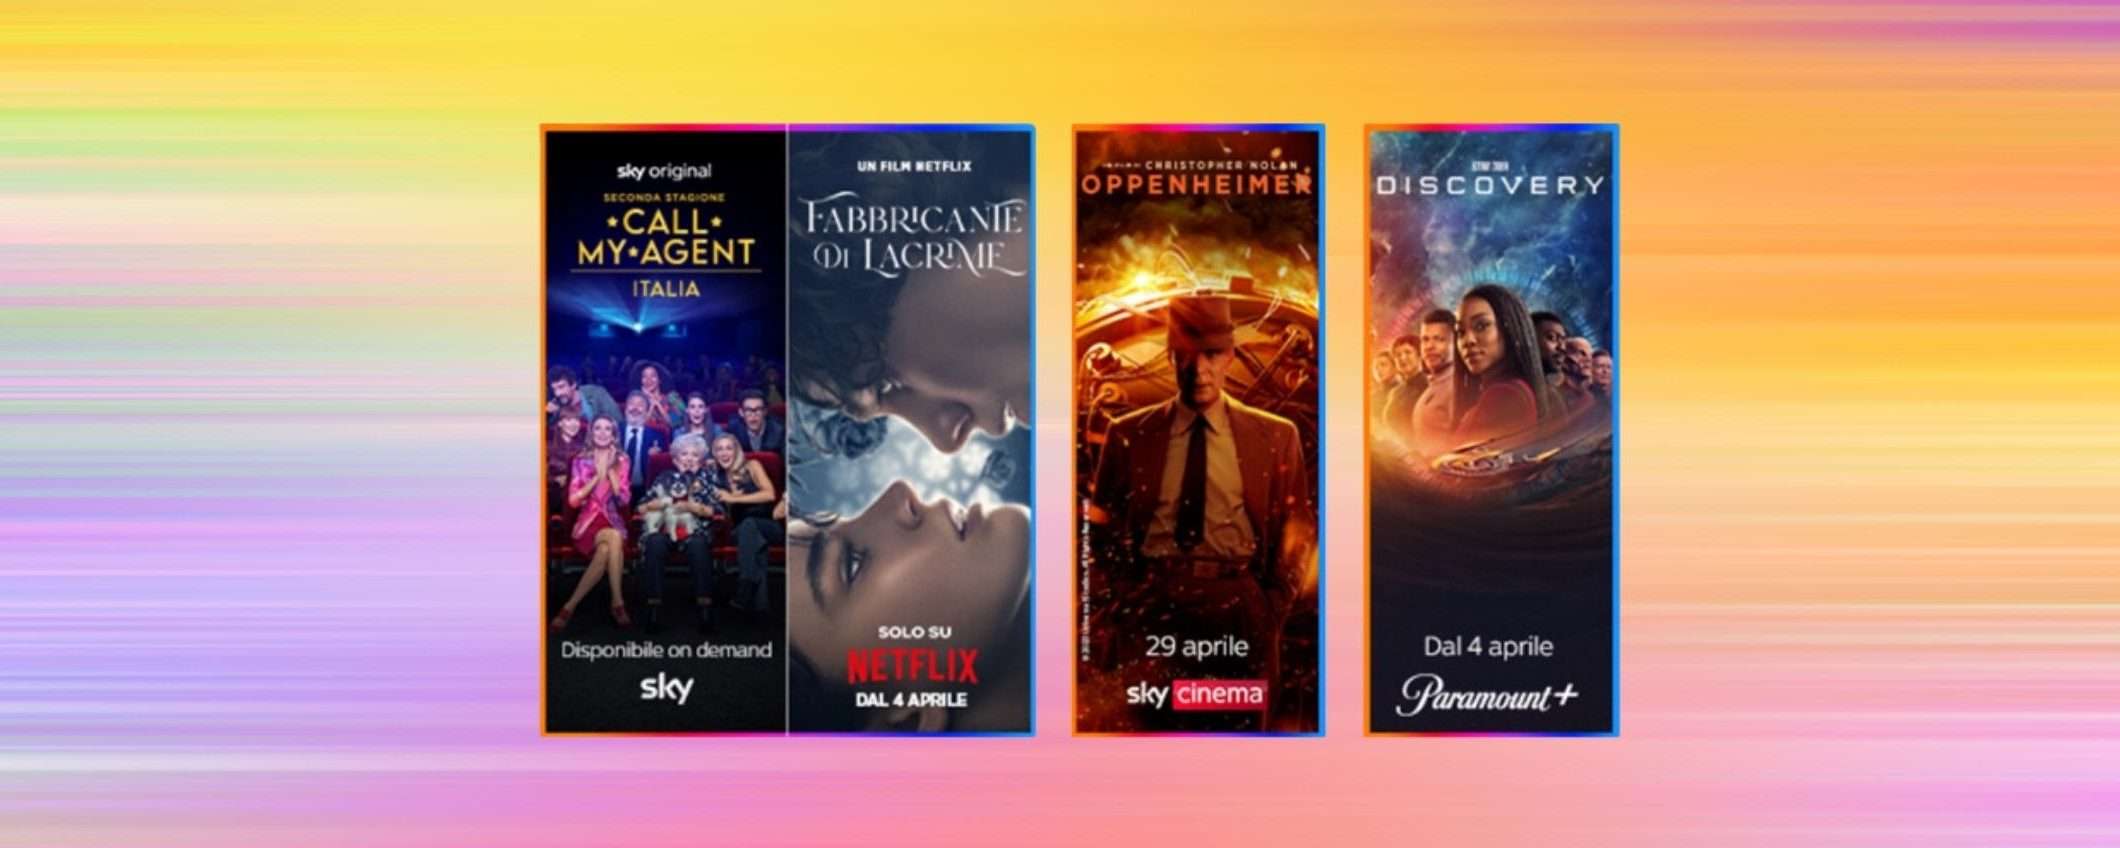 Oppenheimer arriva su Sky Cinema: guardalo con l'offerta Sky + Netflix